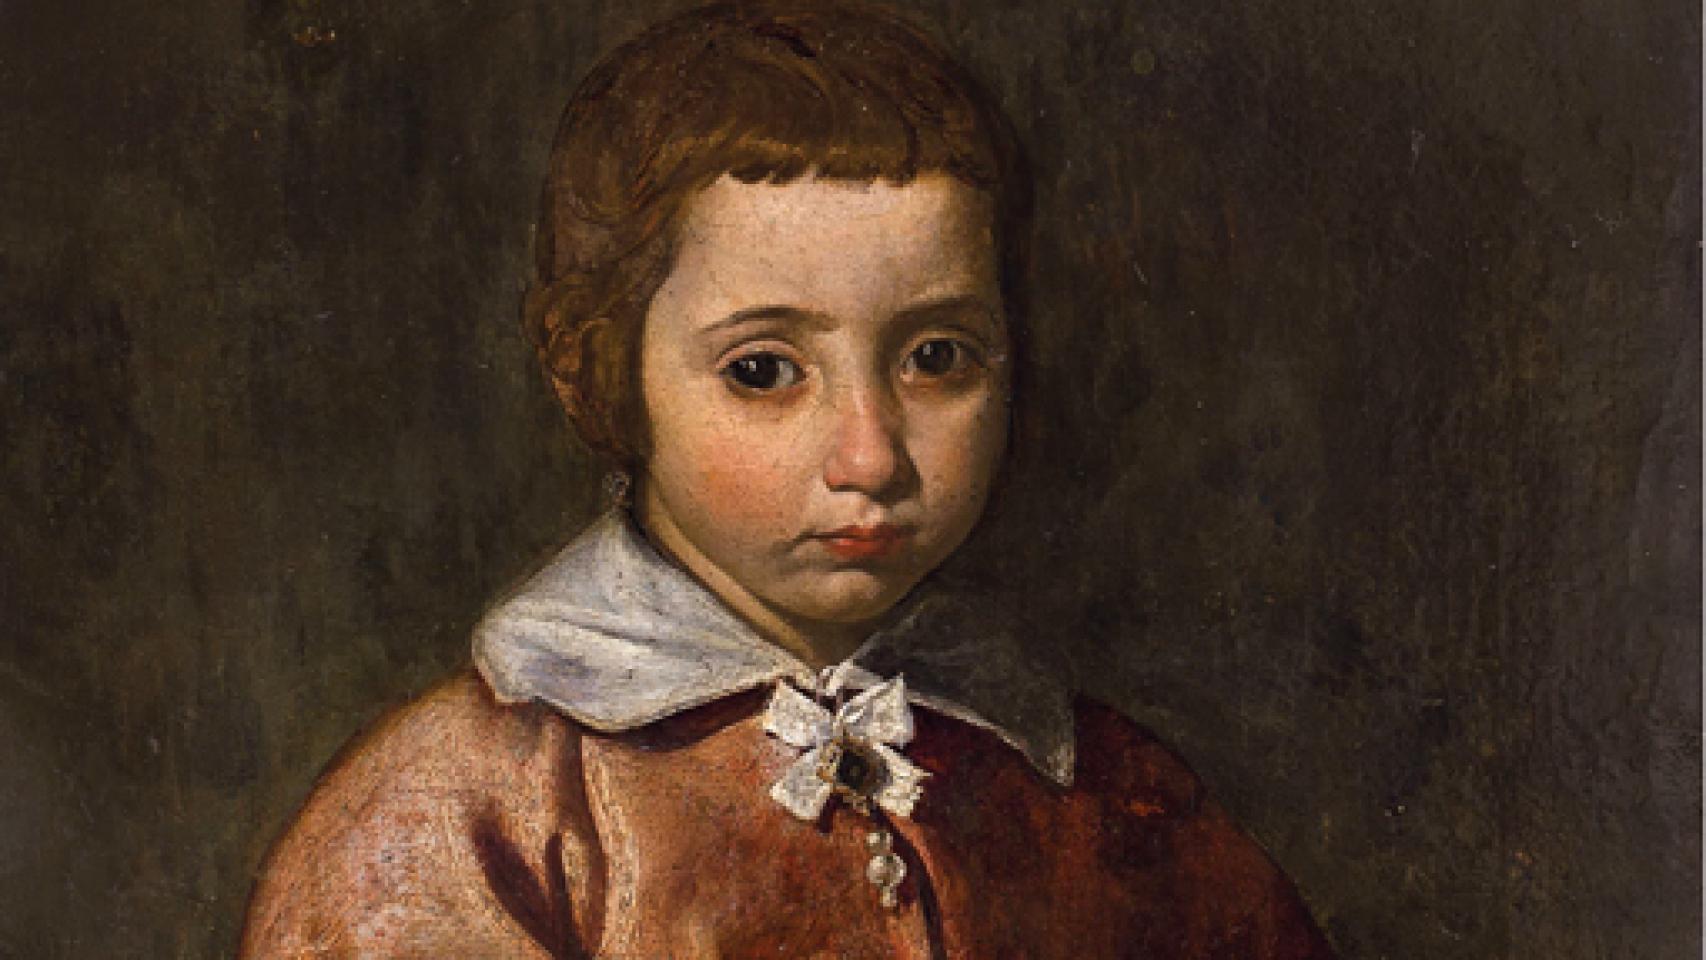 Image: Sale a subasta un Velázquez inédito